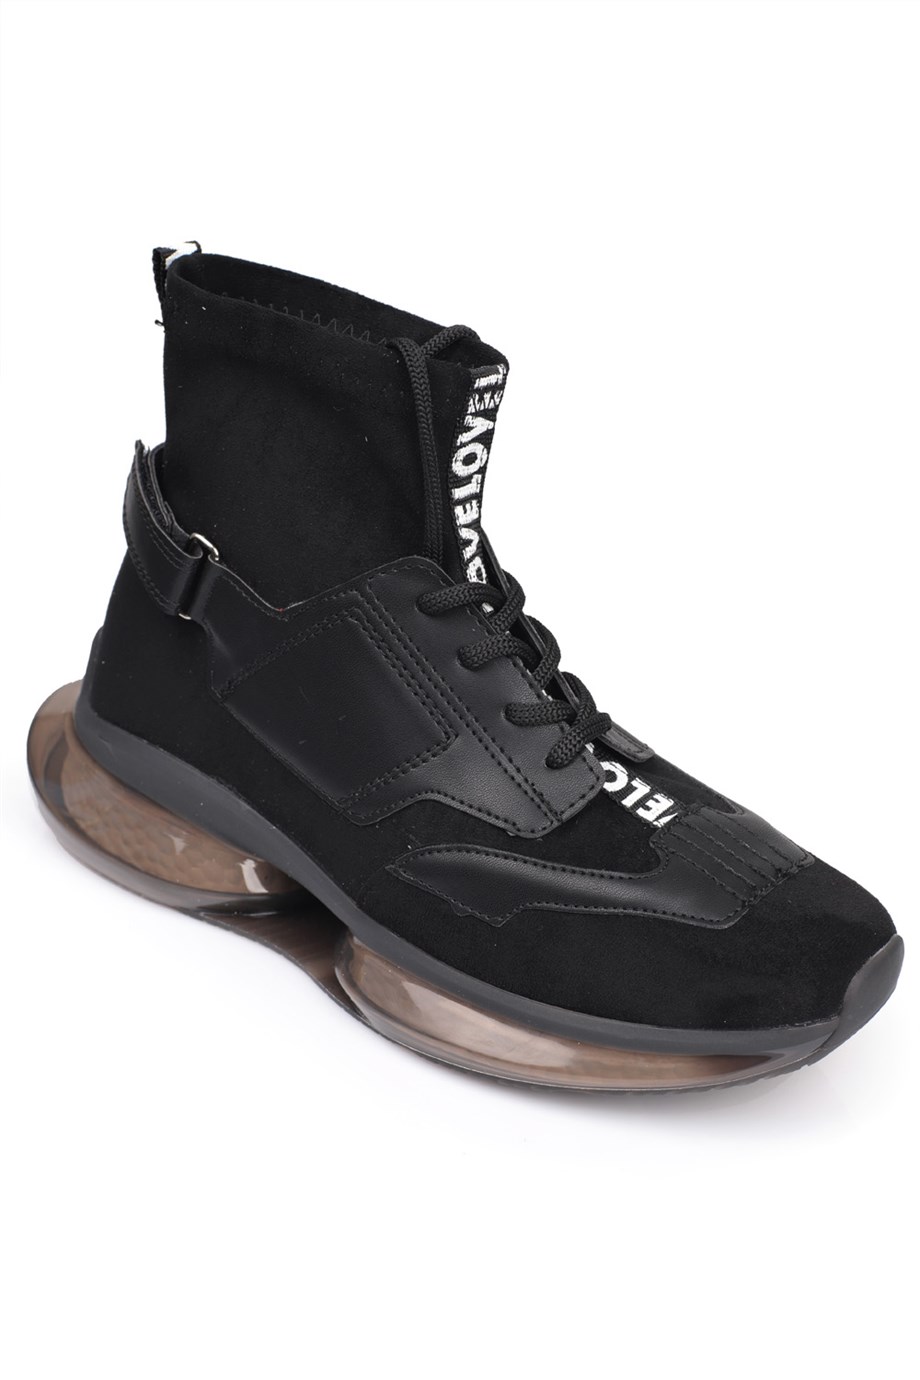 Capone Siyah Şeffaf Comfort Fashion Tabanlı Boğazlı Kadın Sneaker Spor  Ayakkabı | Caponestore